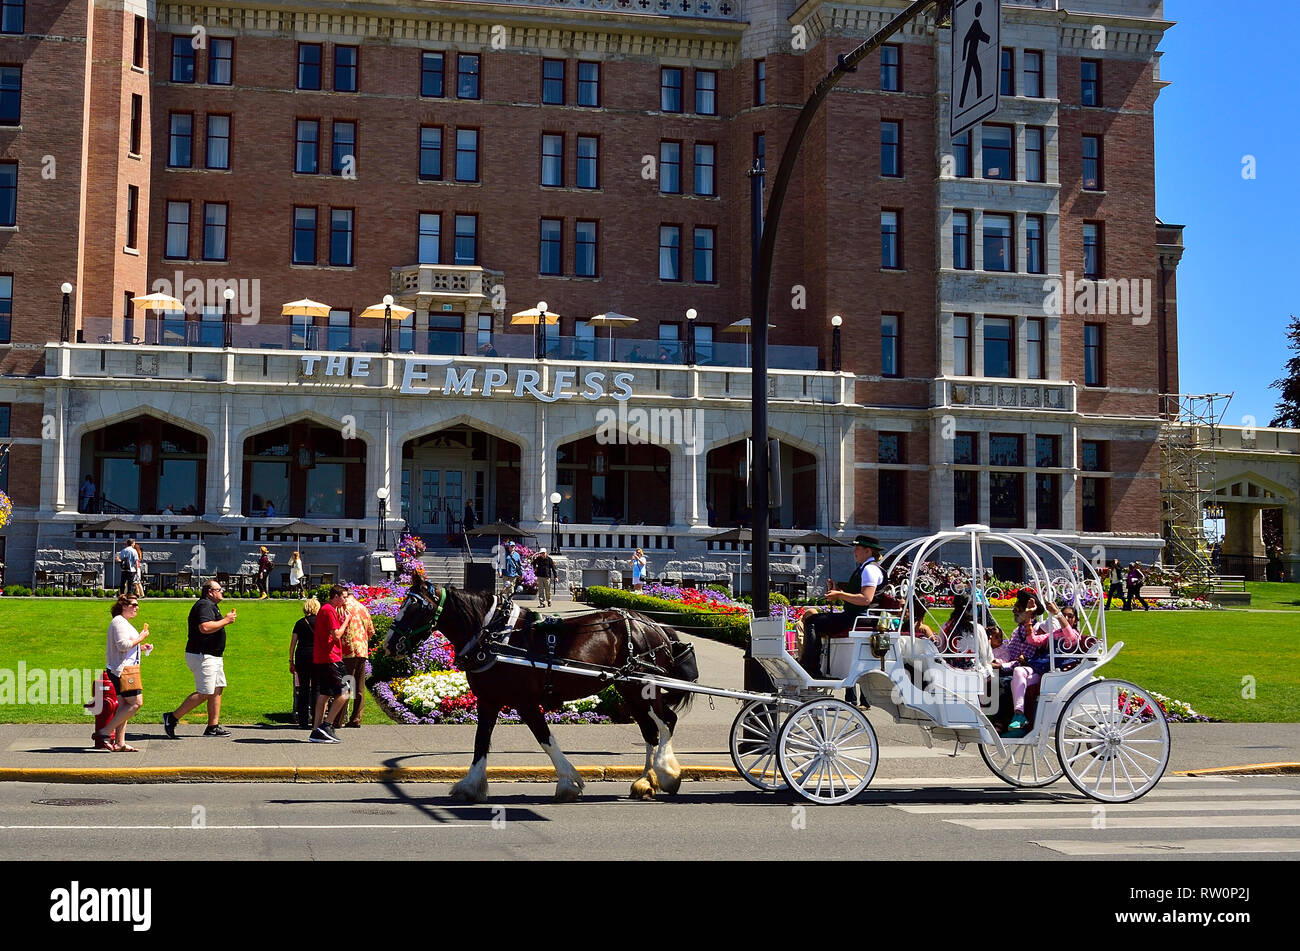 Un cheval et un chariot classique offre des passagers de l'Hôtel Fairmont Empress à Victoria, Colombie-Britannique, Canada. Banque D'Images